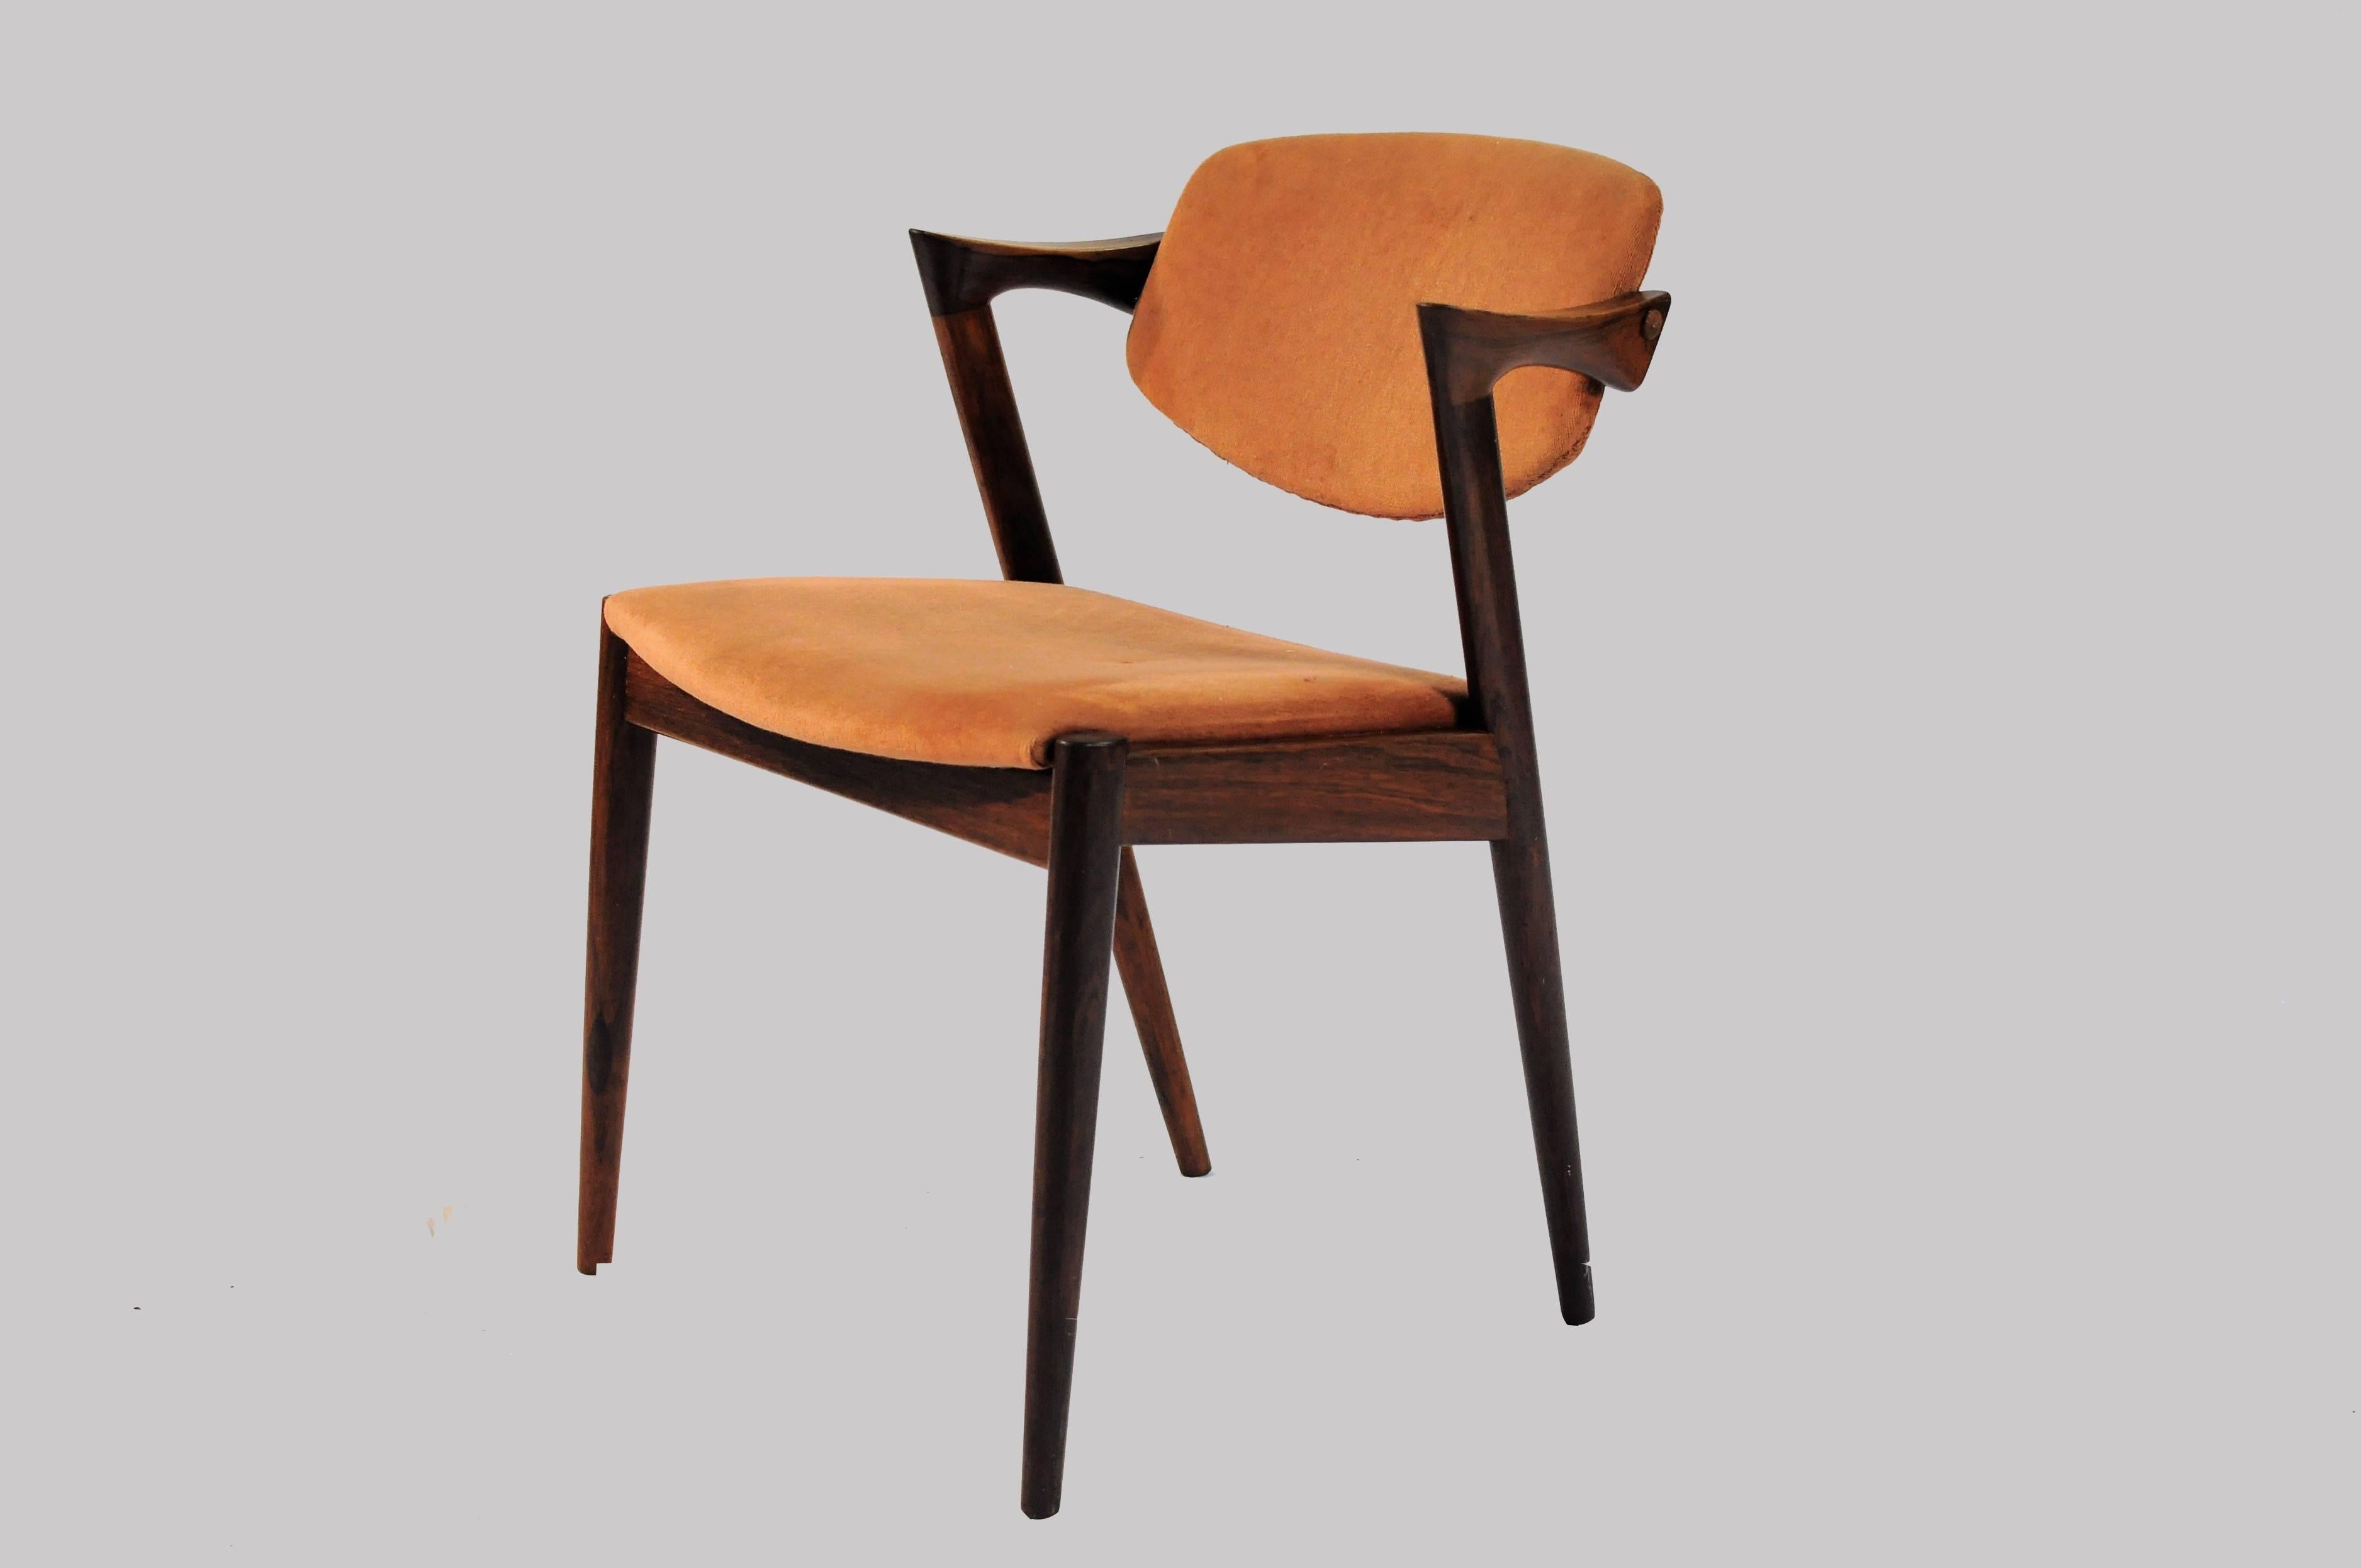 Ensemble de 10 chaises de salle à manger modèle 42 en bois de rose avec dossier réglable par Kai Kristiansen pour Schous Møbelfabrik.

Les chaises ont le design léger et élégant typique de Kai Kristiansens qui leur permet de s'intégrer facilement là